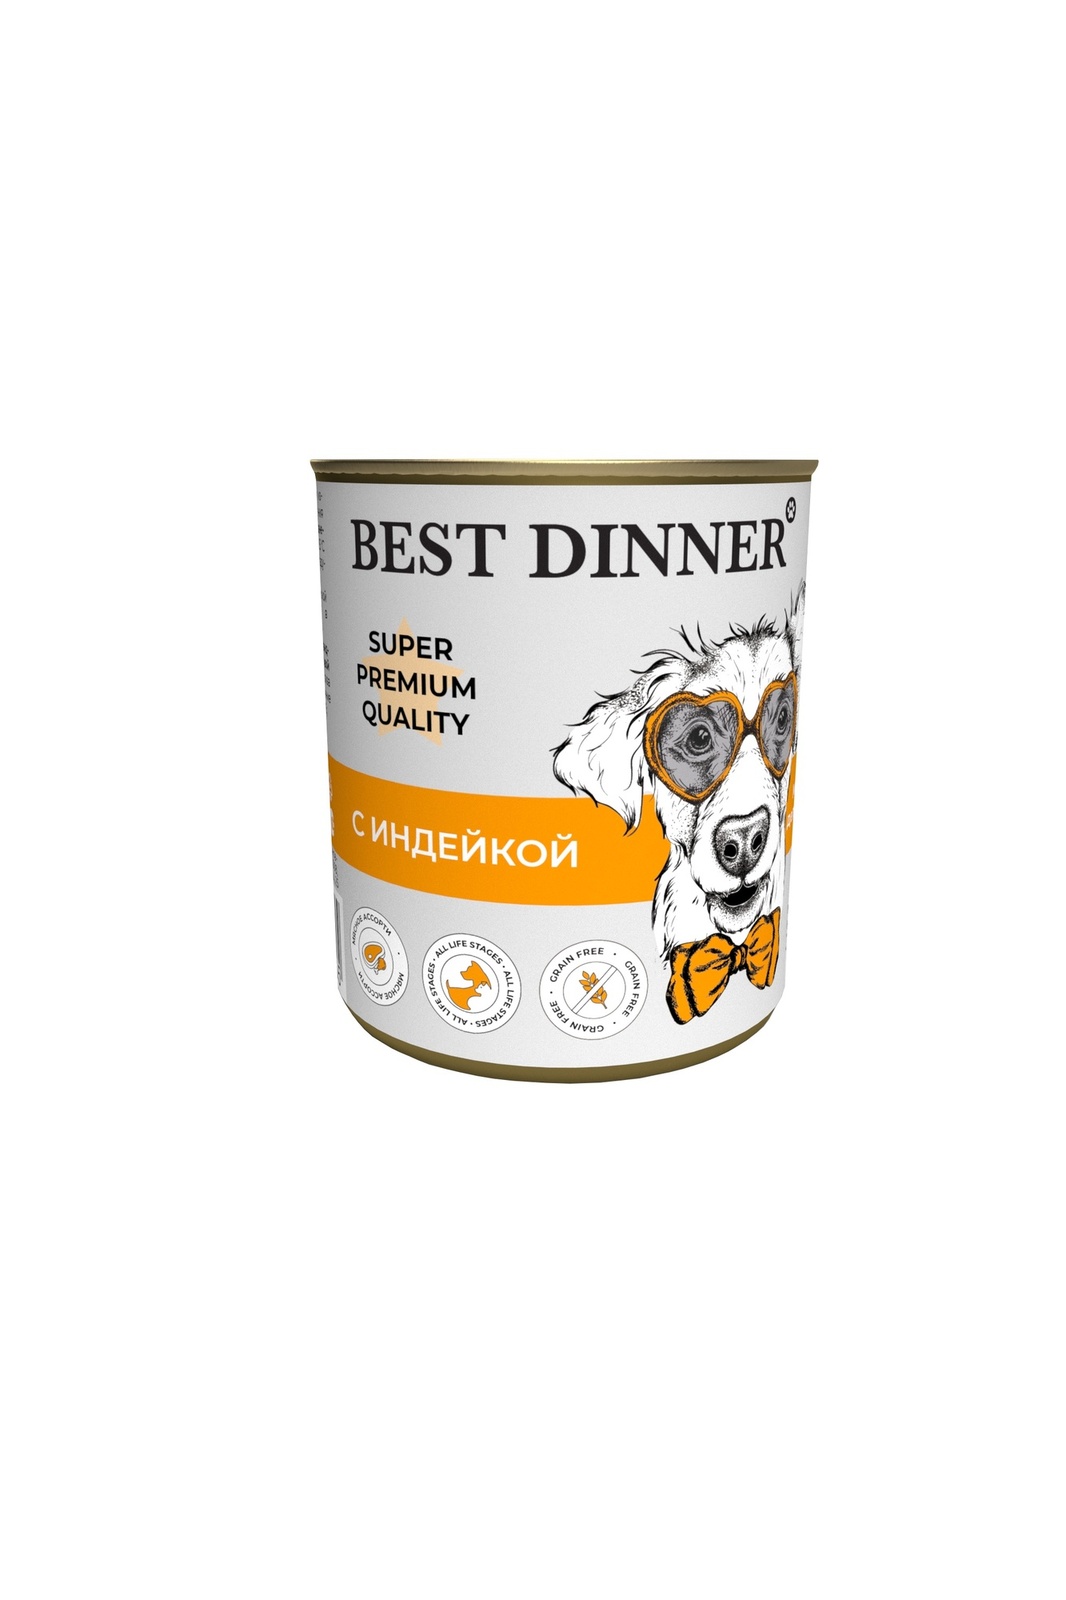 Best Dinner Best Dinner консервы для собак Super Premium С индейкой (340 г) best dinner best dinner консервы premium меню 4 с телятиной и овощами 340 г